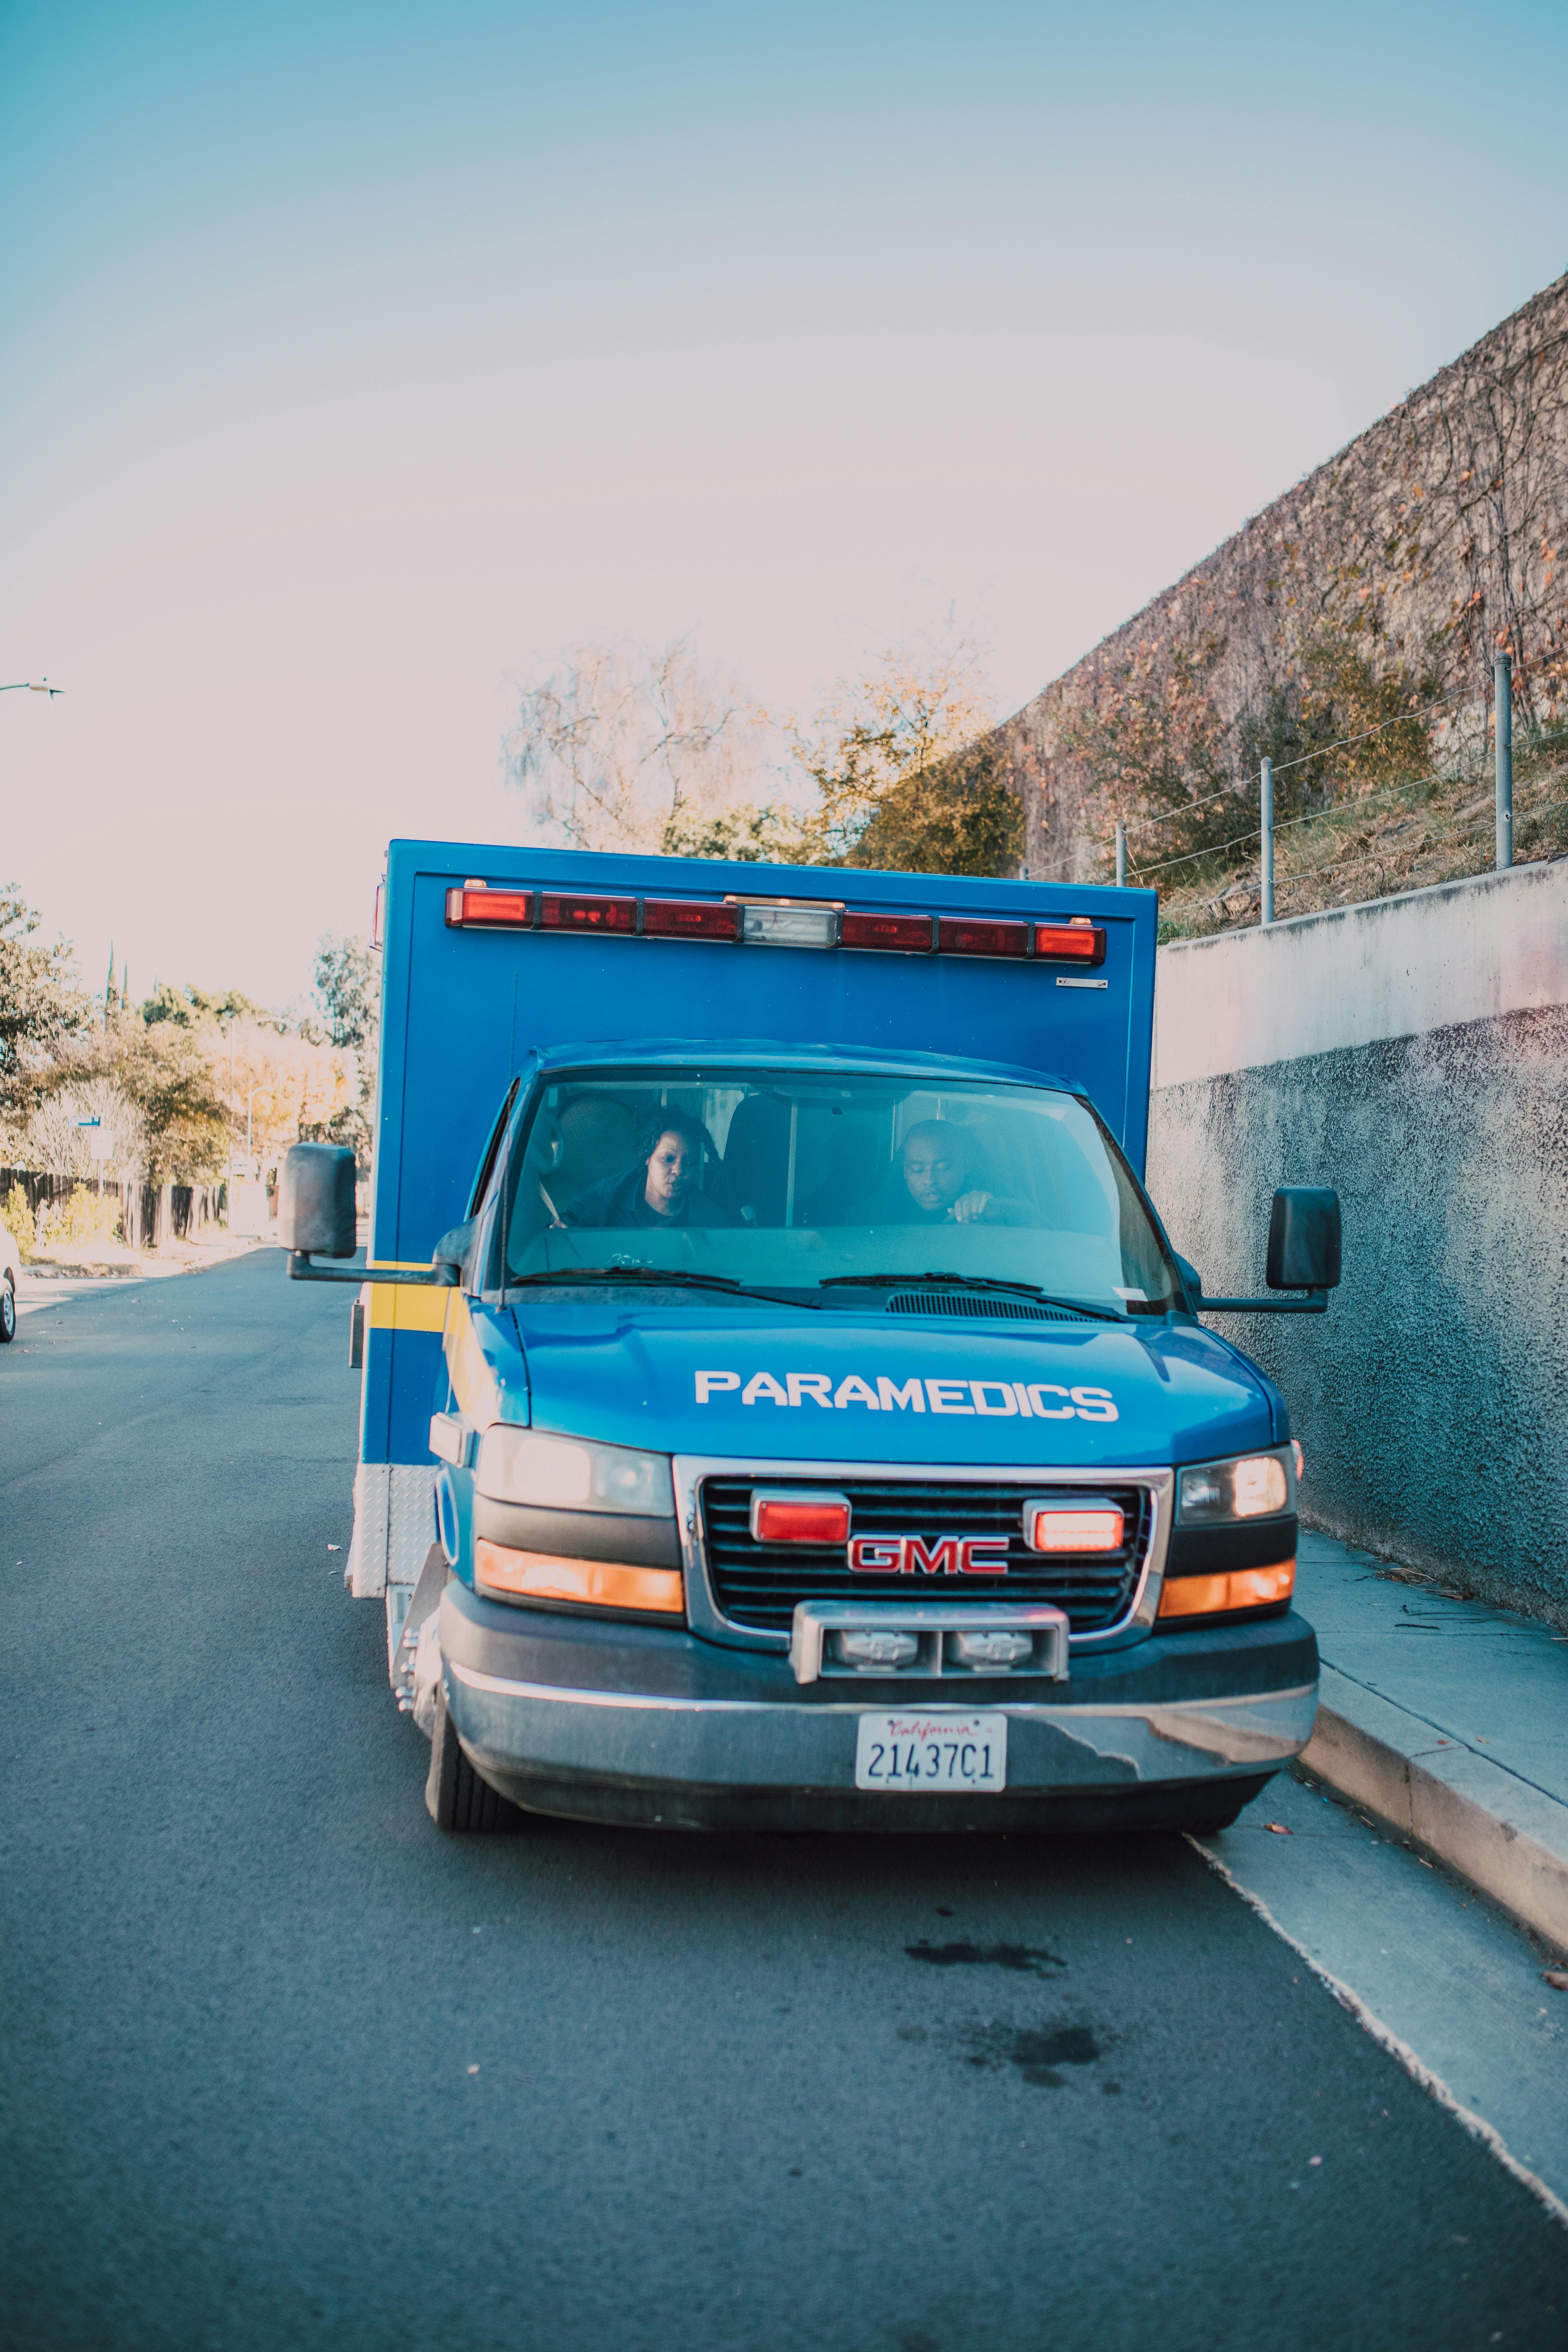 Une ambulance bleue garée sur le bord de la route | Source : Pexels